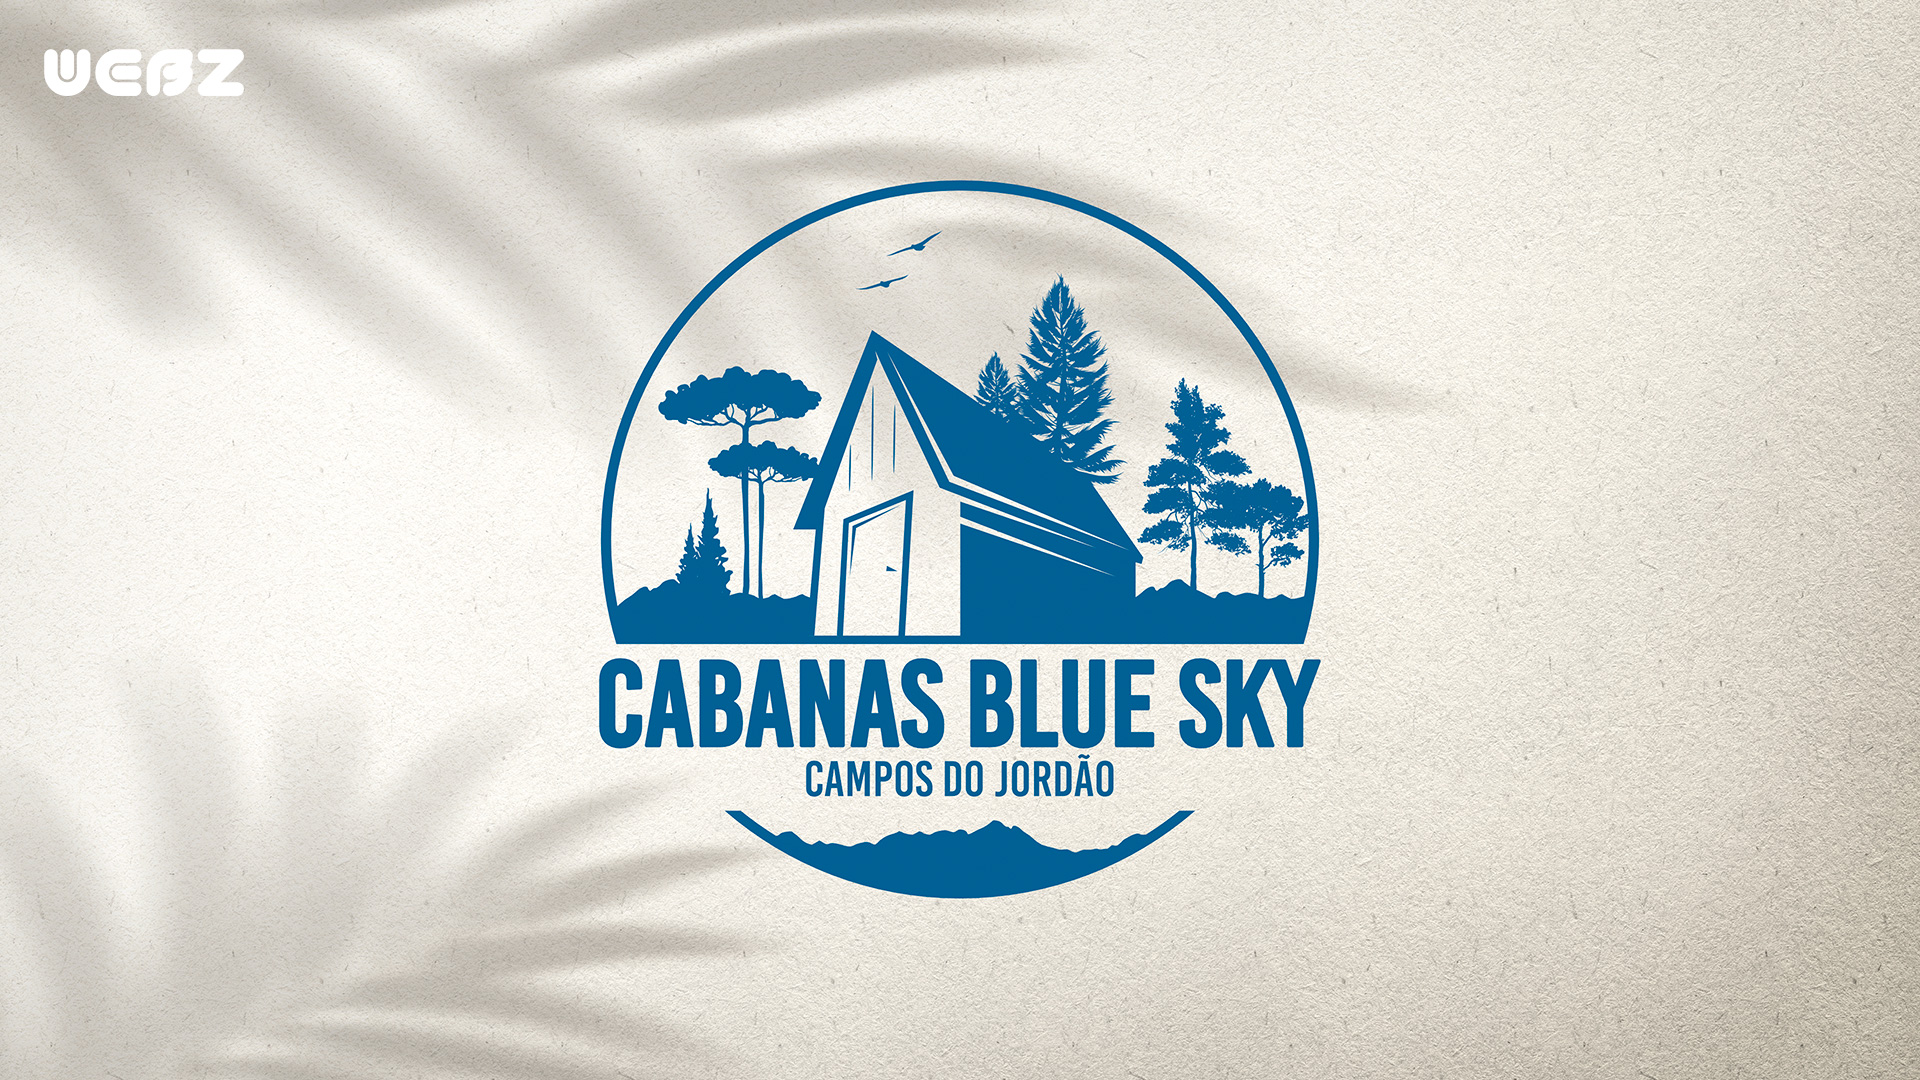 WEBZ - Cabanas Blue